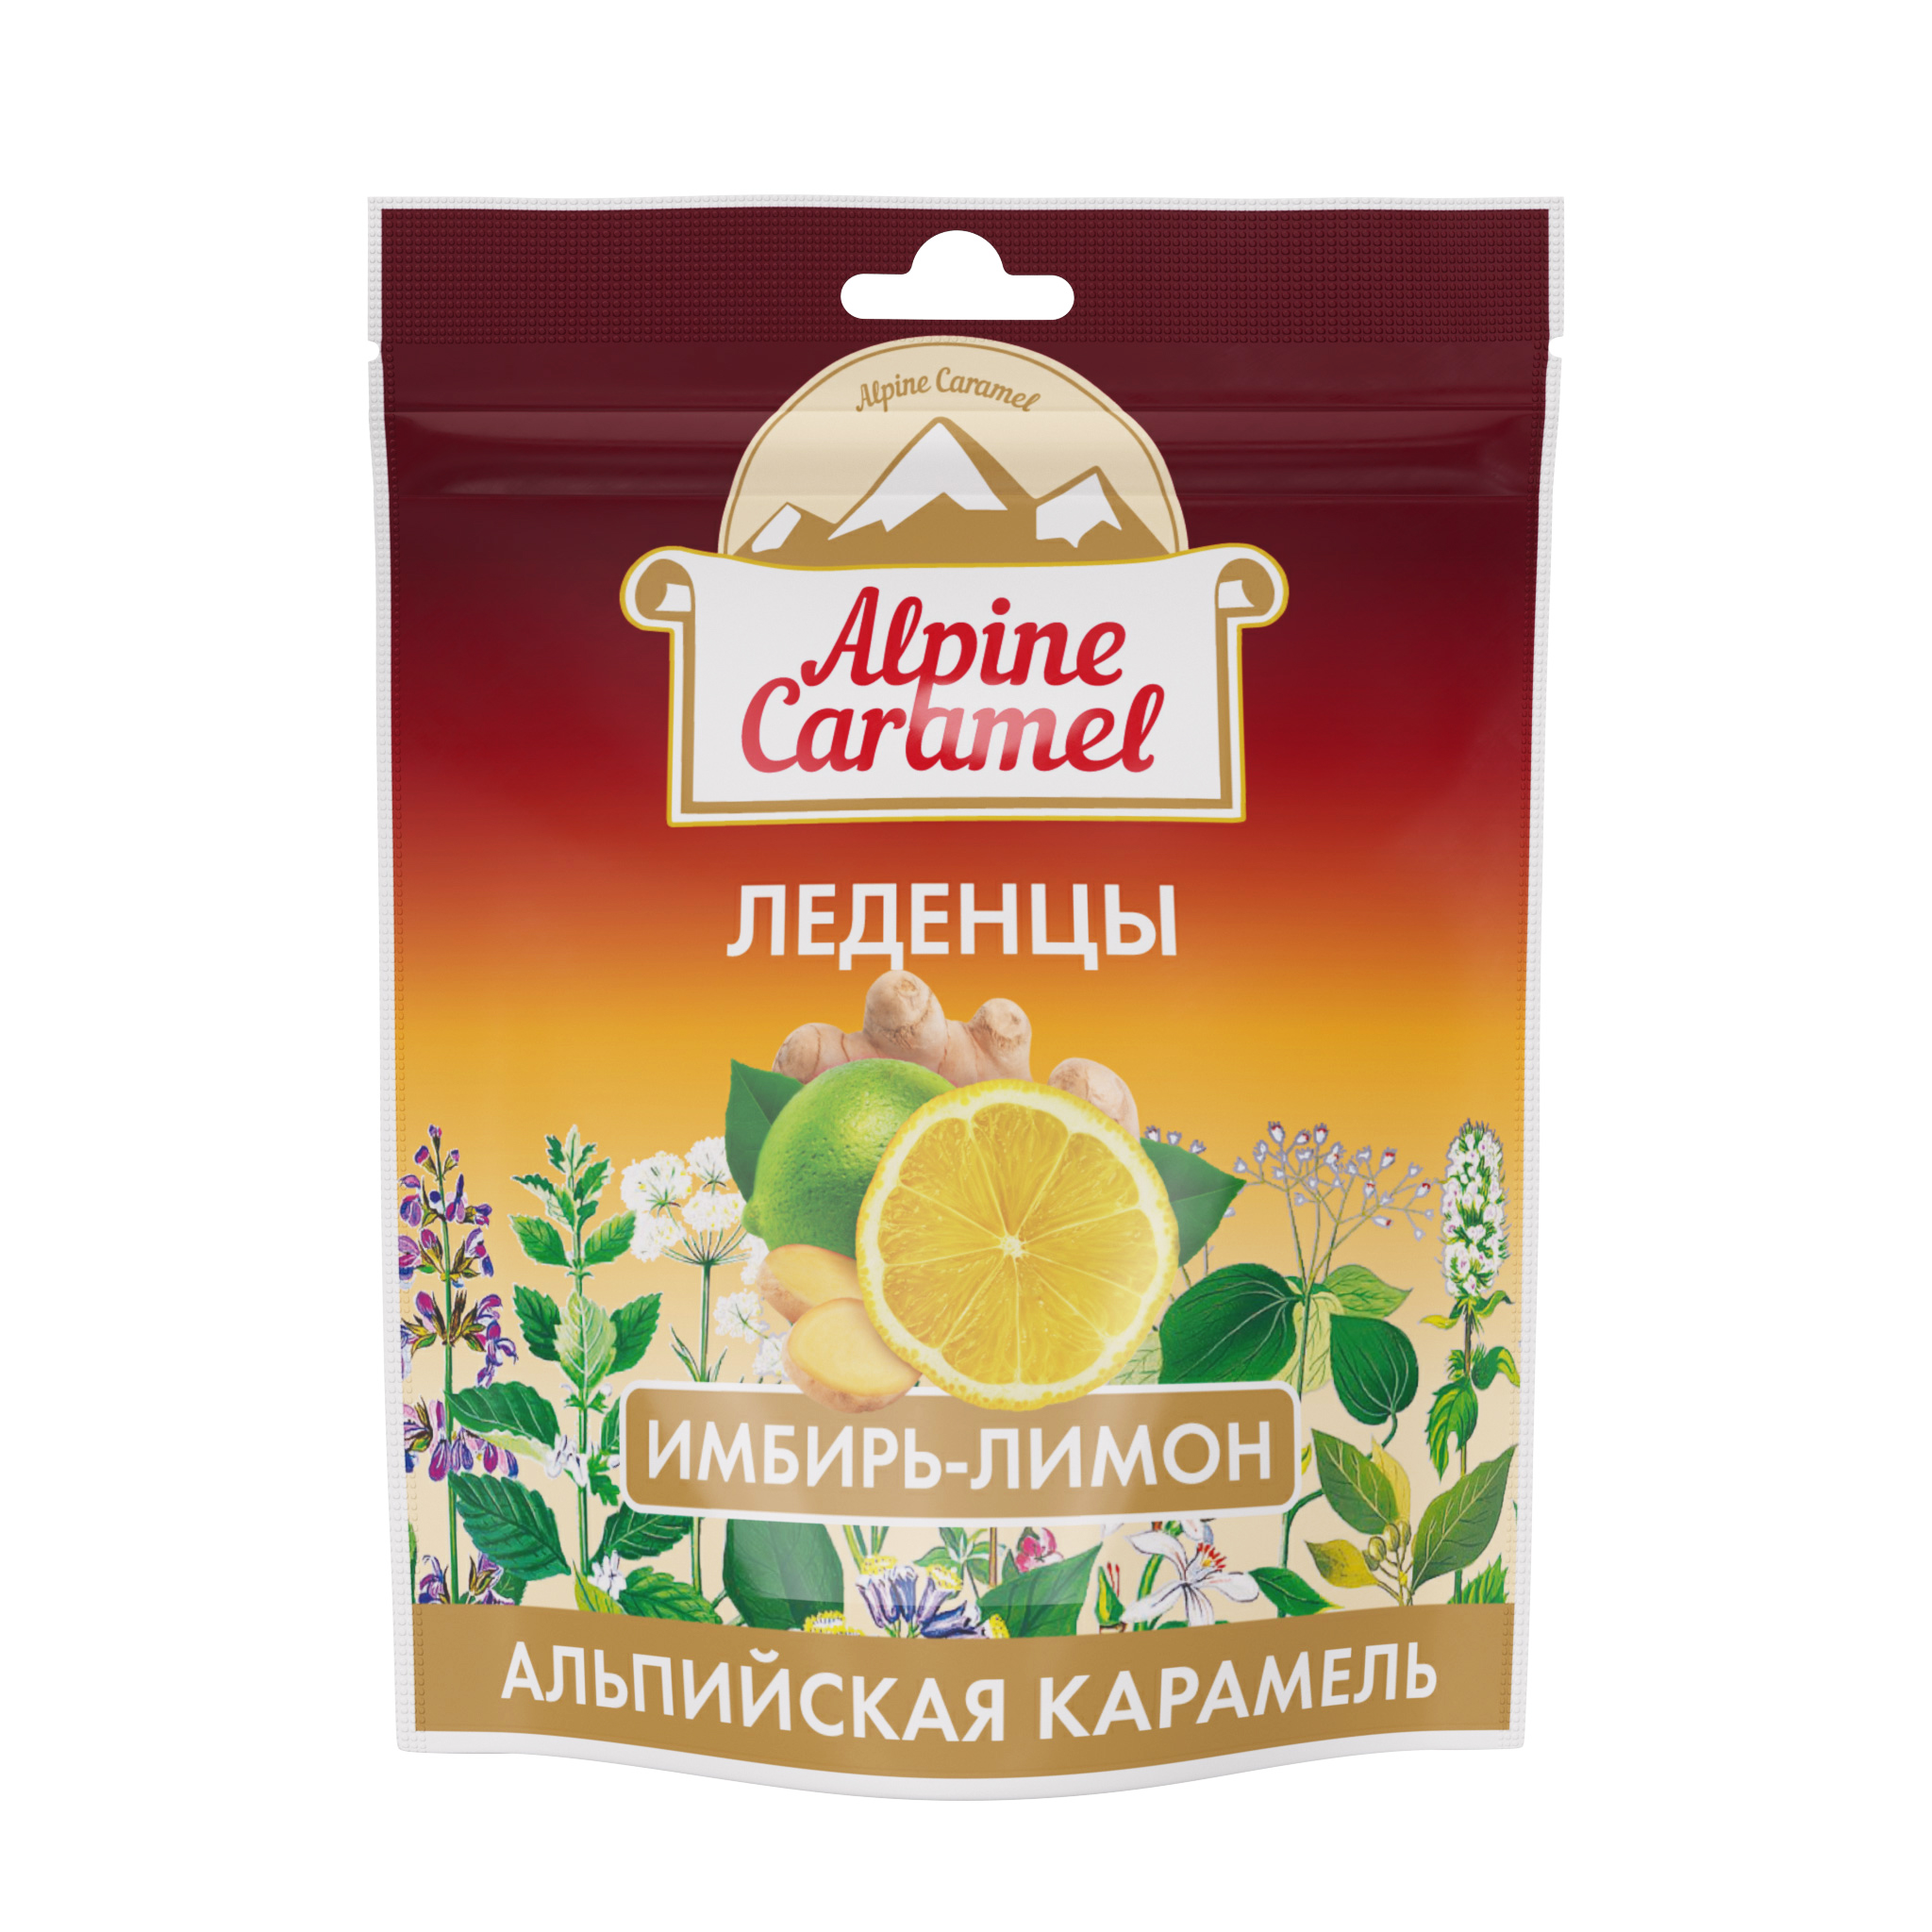 Alpine Caramel, леденцы со вкусом имбирь-лимон, 75 г liv delano гель для душа тыква и имбирь superfood 250